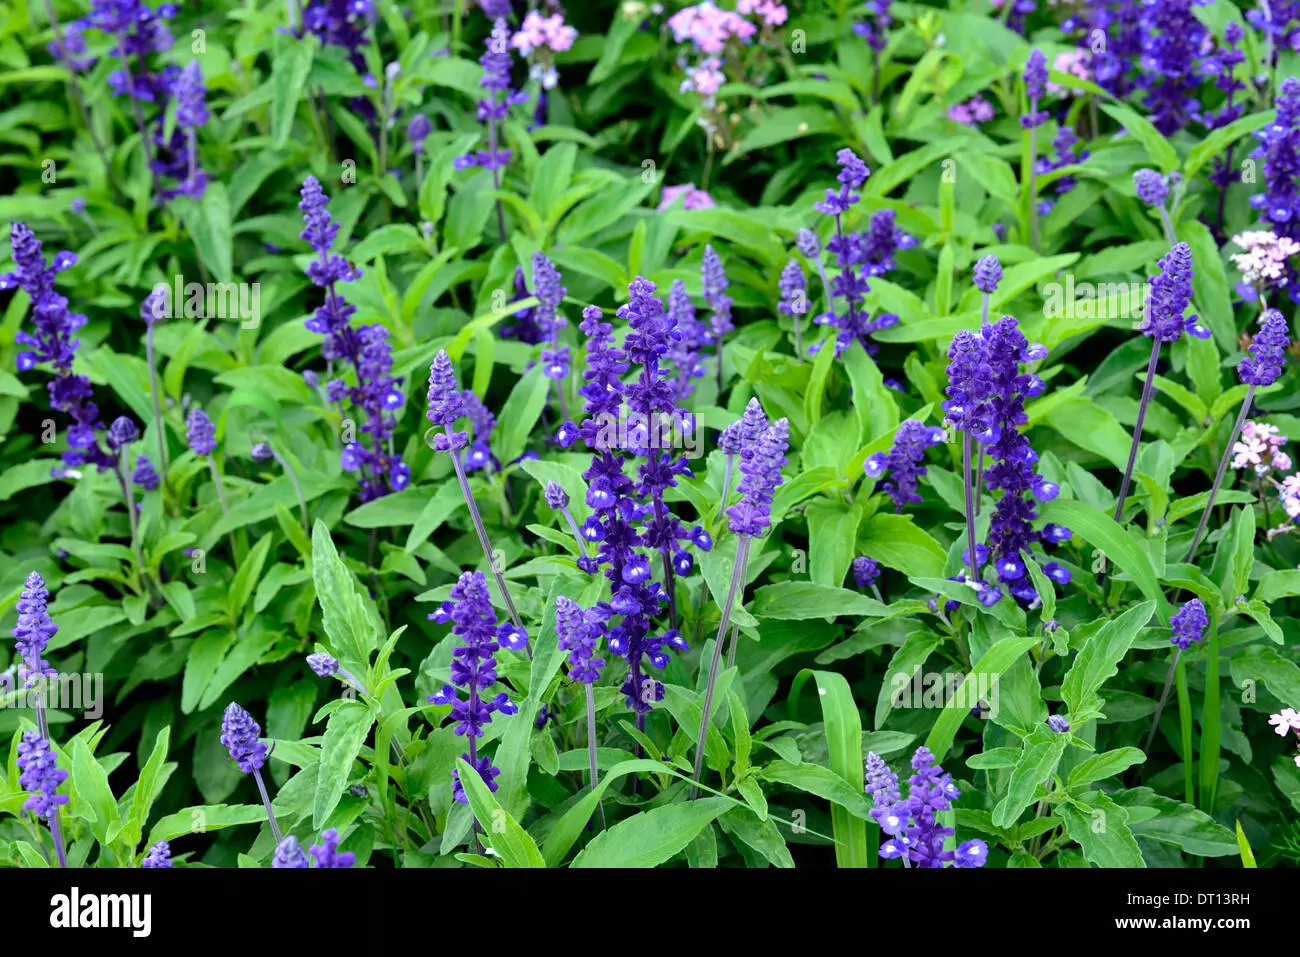 piante con fiori viola - Come si chiama la pianta con foglie viola